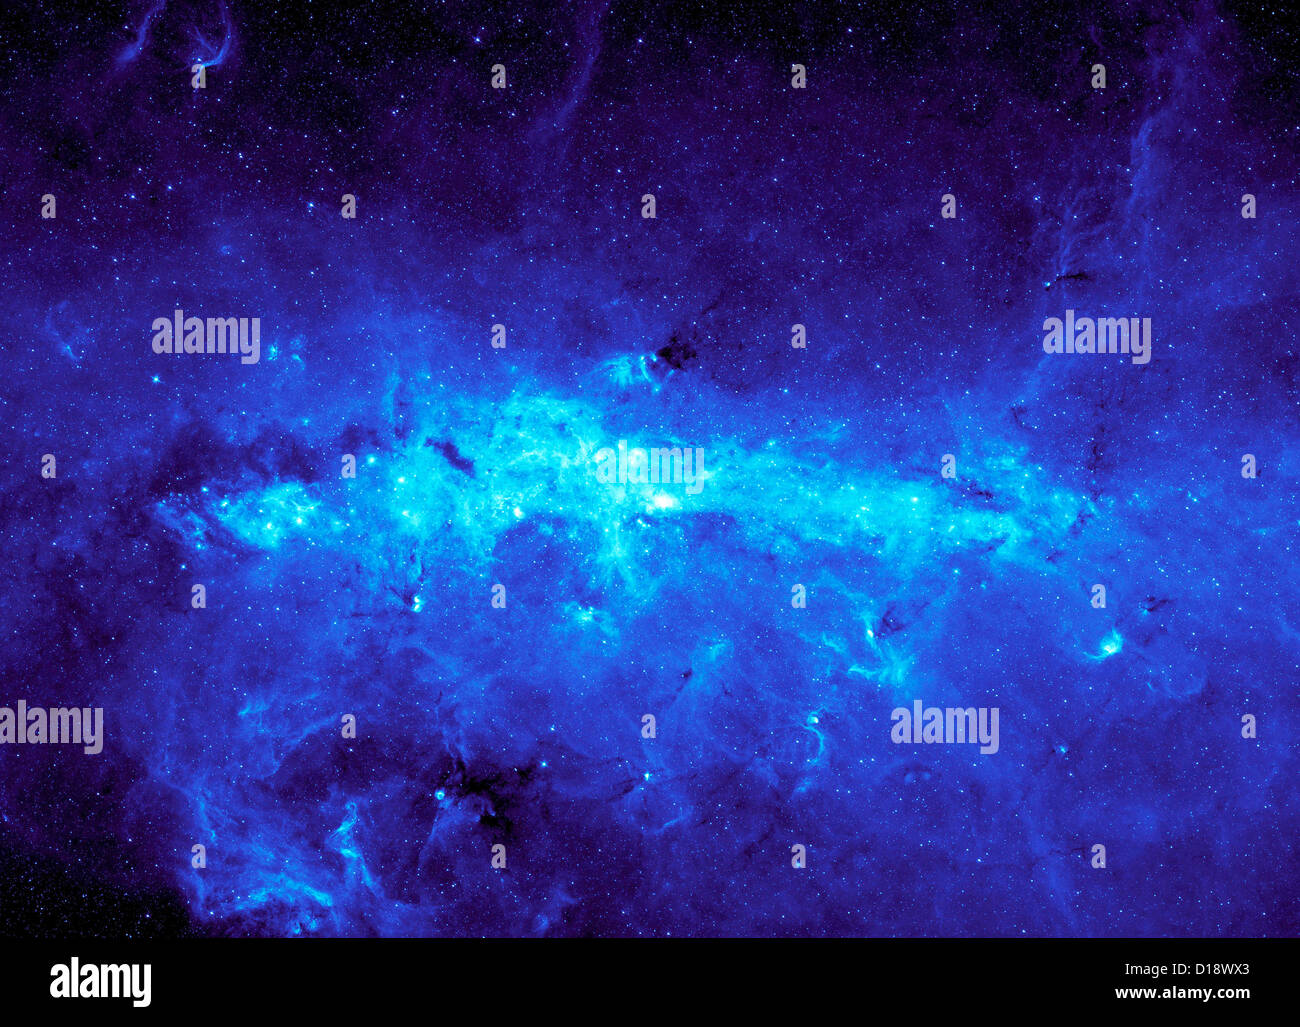 NASA Bild vom Hubble-Teleskop von einem Sternenhimmel Milchstraße  Stockfotografie - Alamy